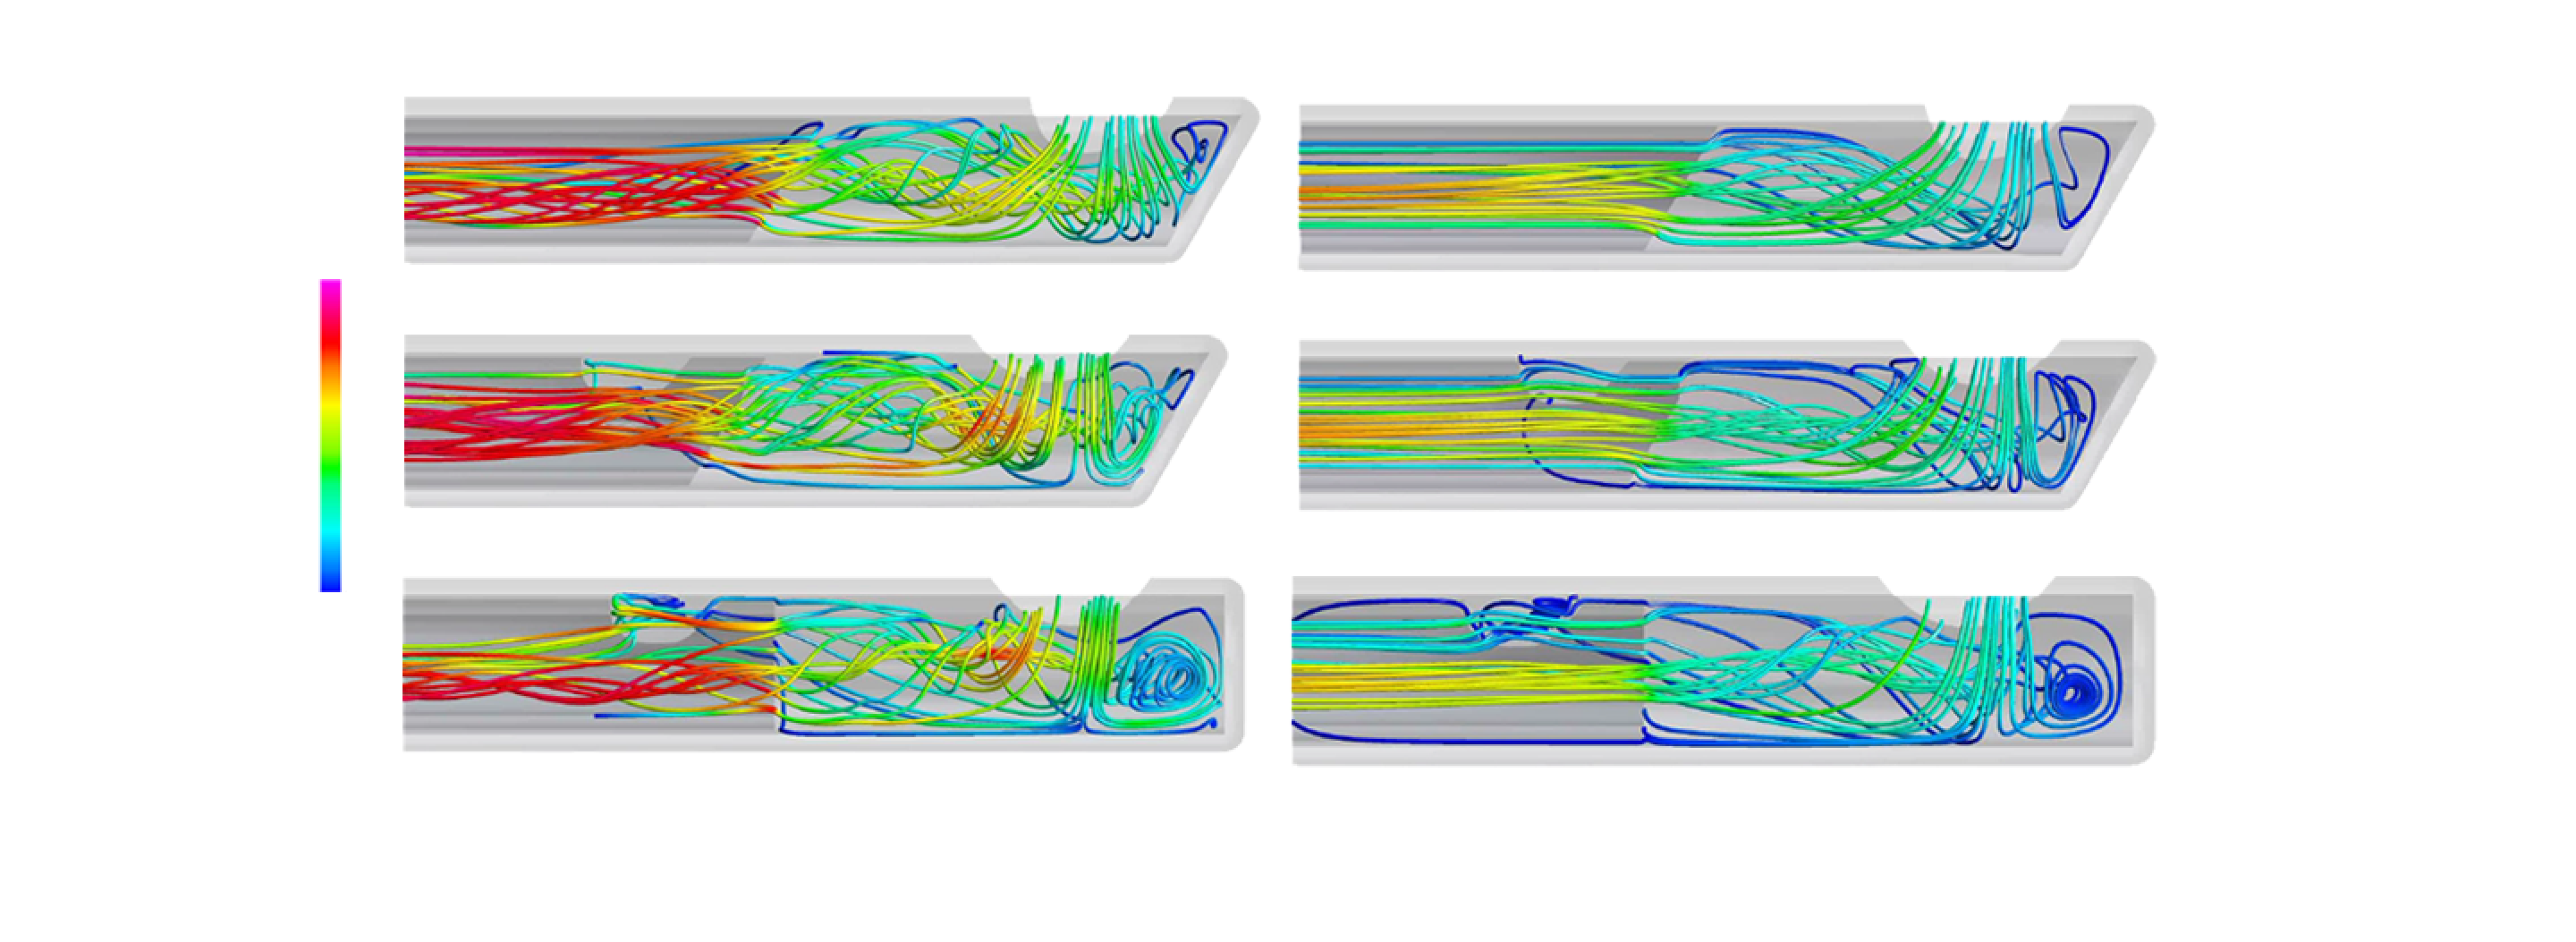 灌流液および硝子体中でのAdvanced ULTRAVIT、HYPERVITベベルチップおよびHYPERVITフラットチッププローブの逆流を比較した画像。HYPERVITベベルチップでは他のプローブと比較して逆流を低減します。